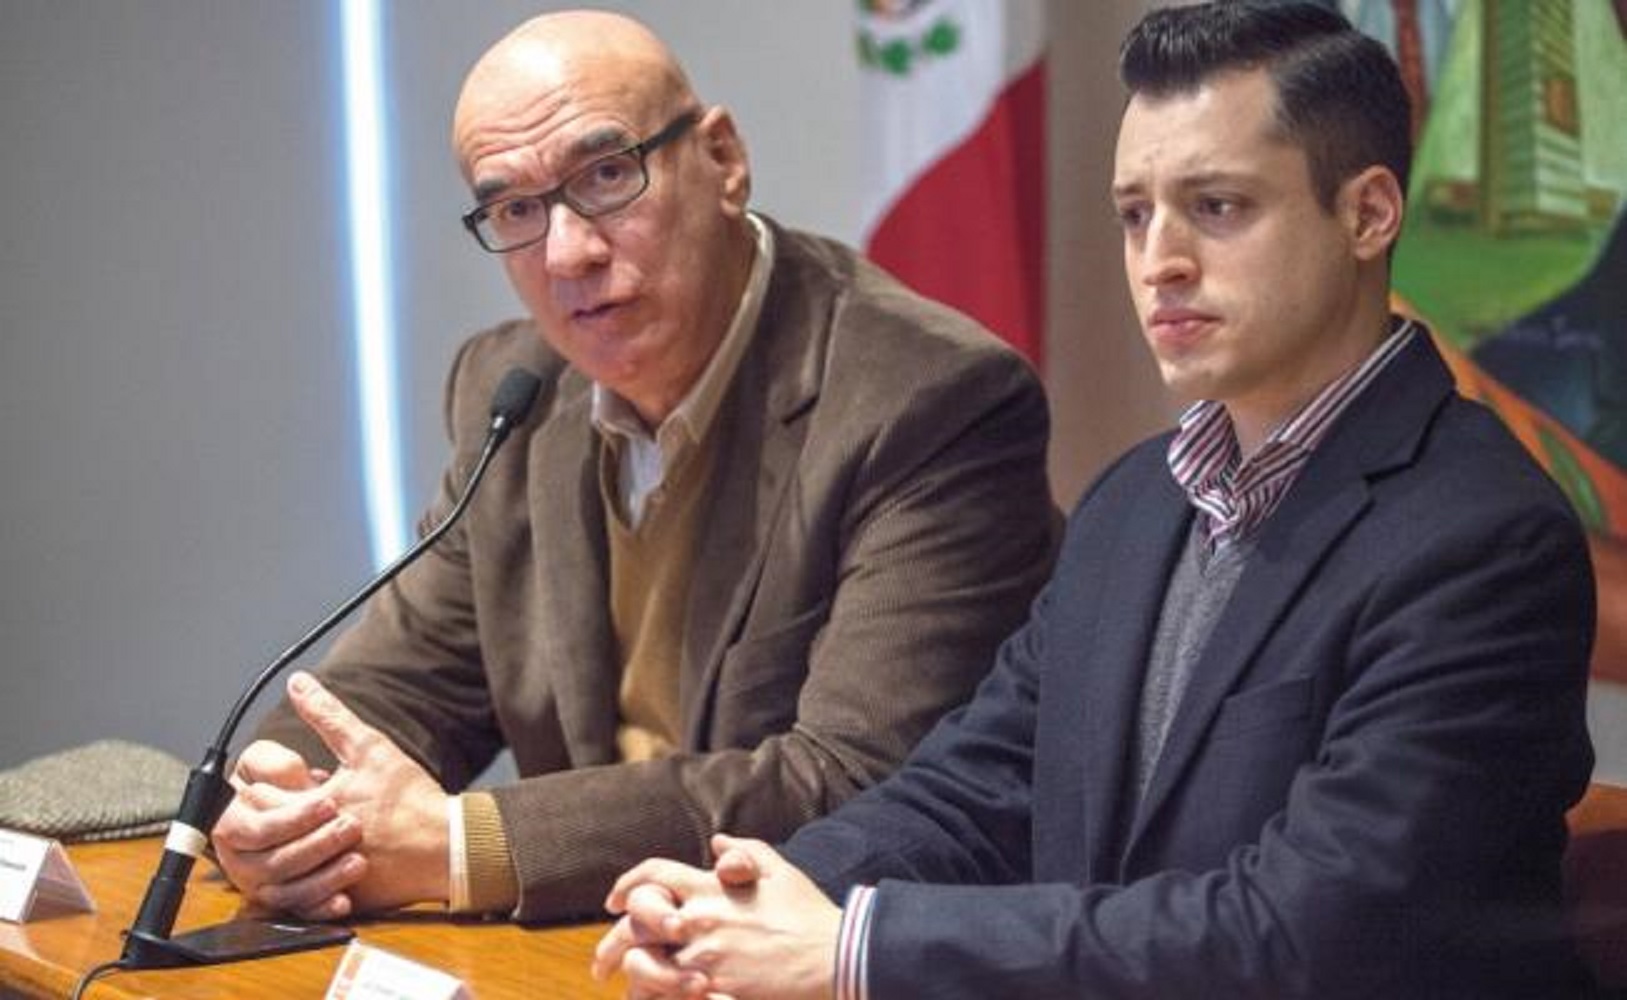 Luis Donaldo COlosio, Nuevo León, MC, Diputado, PRI, Padre, Descompuesto, Vida política, Institución política